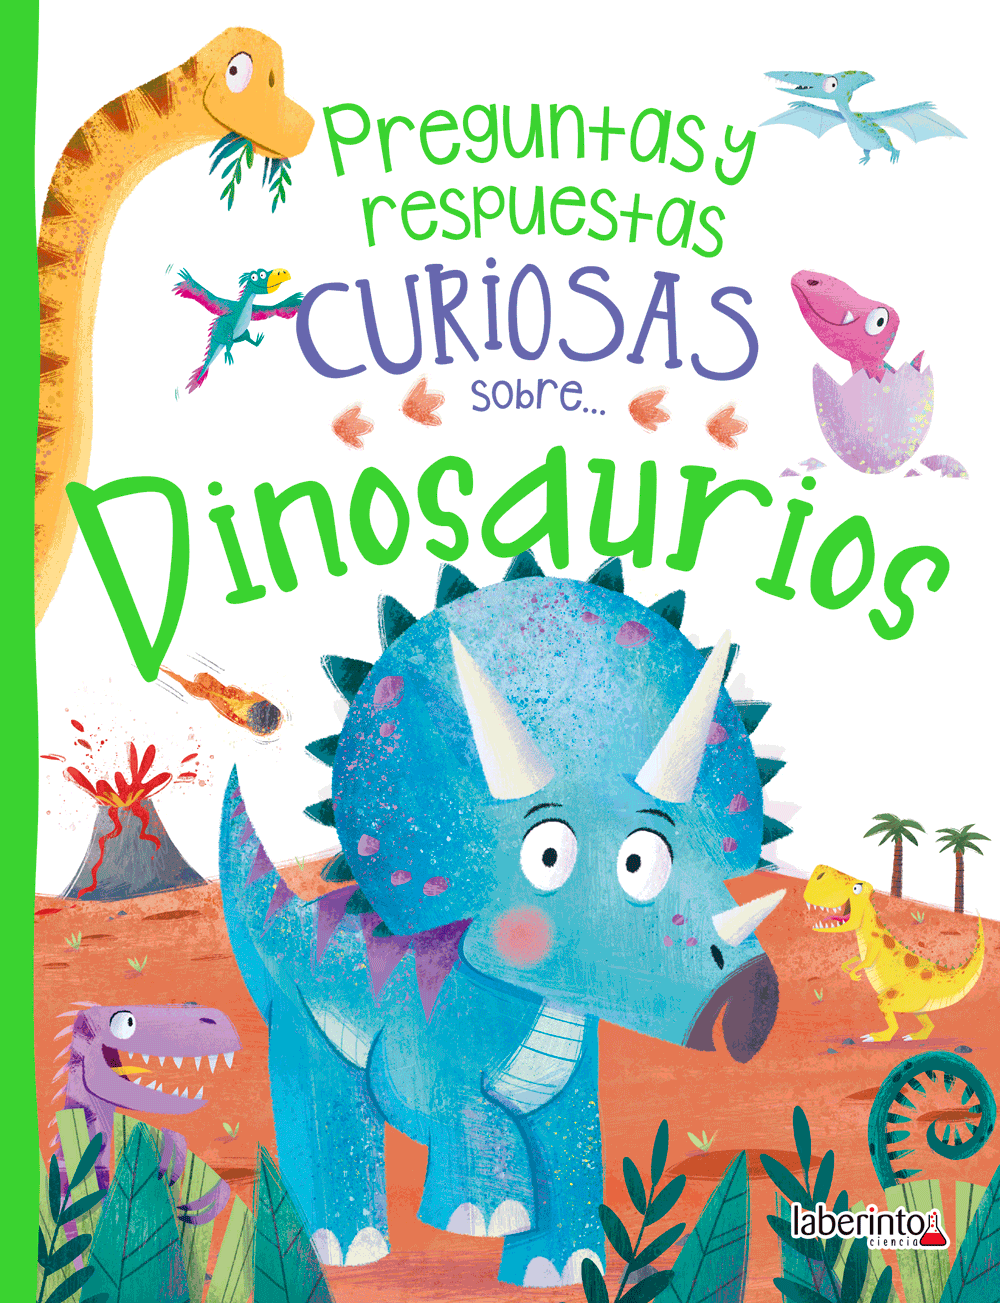 Preguntas y respuestas curiosas sobre... Dinosaurios - Ediciones Laberinto